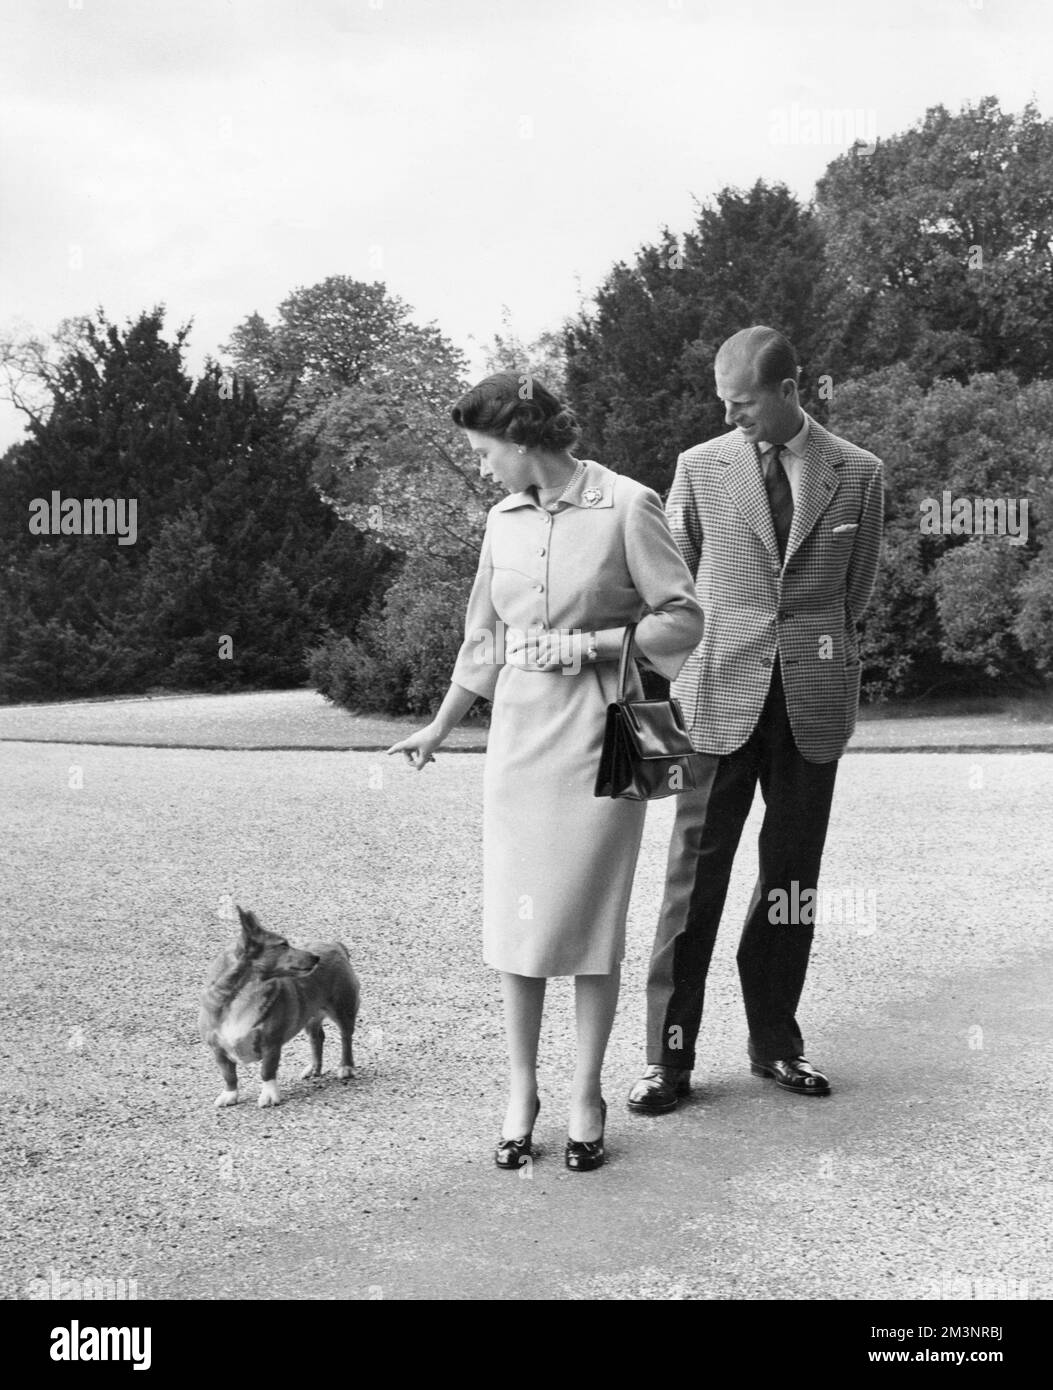 Königin Elizabeth II. Und Prinz Philip, Herzog von Edinburgh mit dem Corgi-Hund der Königin, Sugar, vor dem Tor von George IV in Windsor Castle im Juni 1959. Datum: 1959 Stockfoto